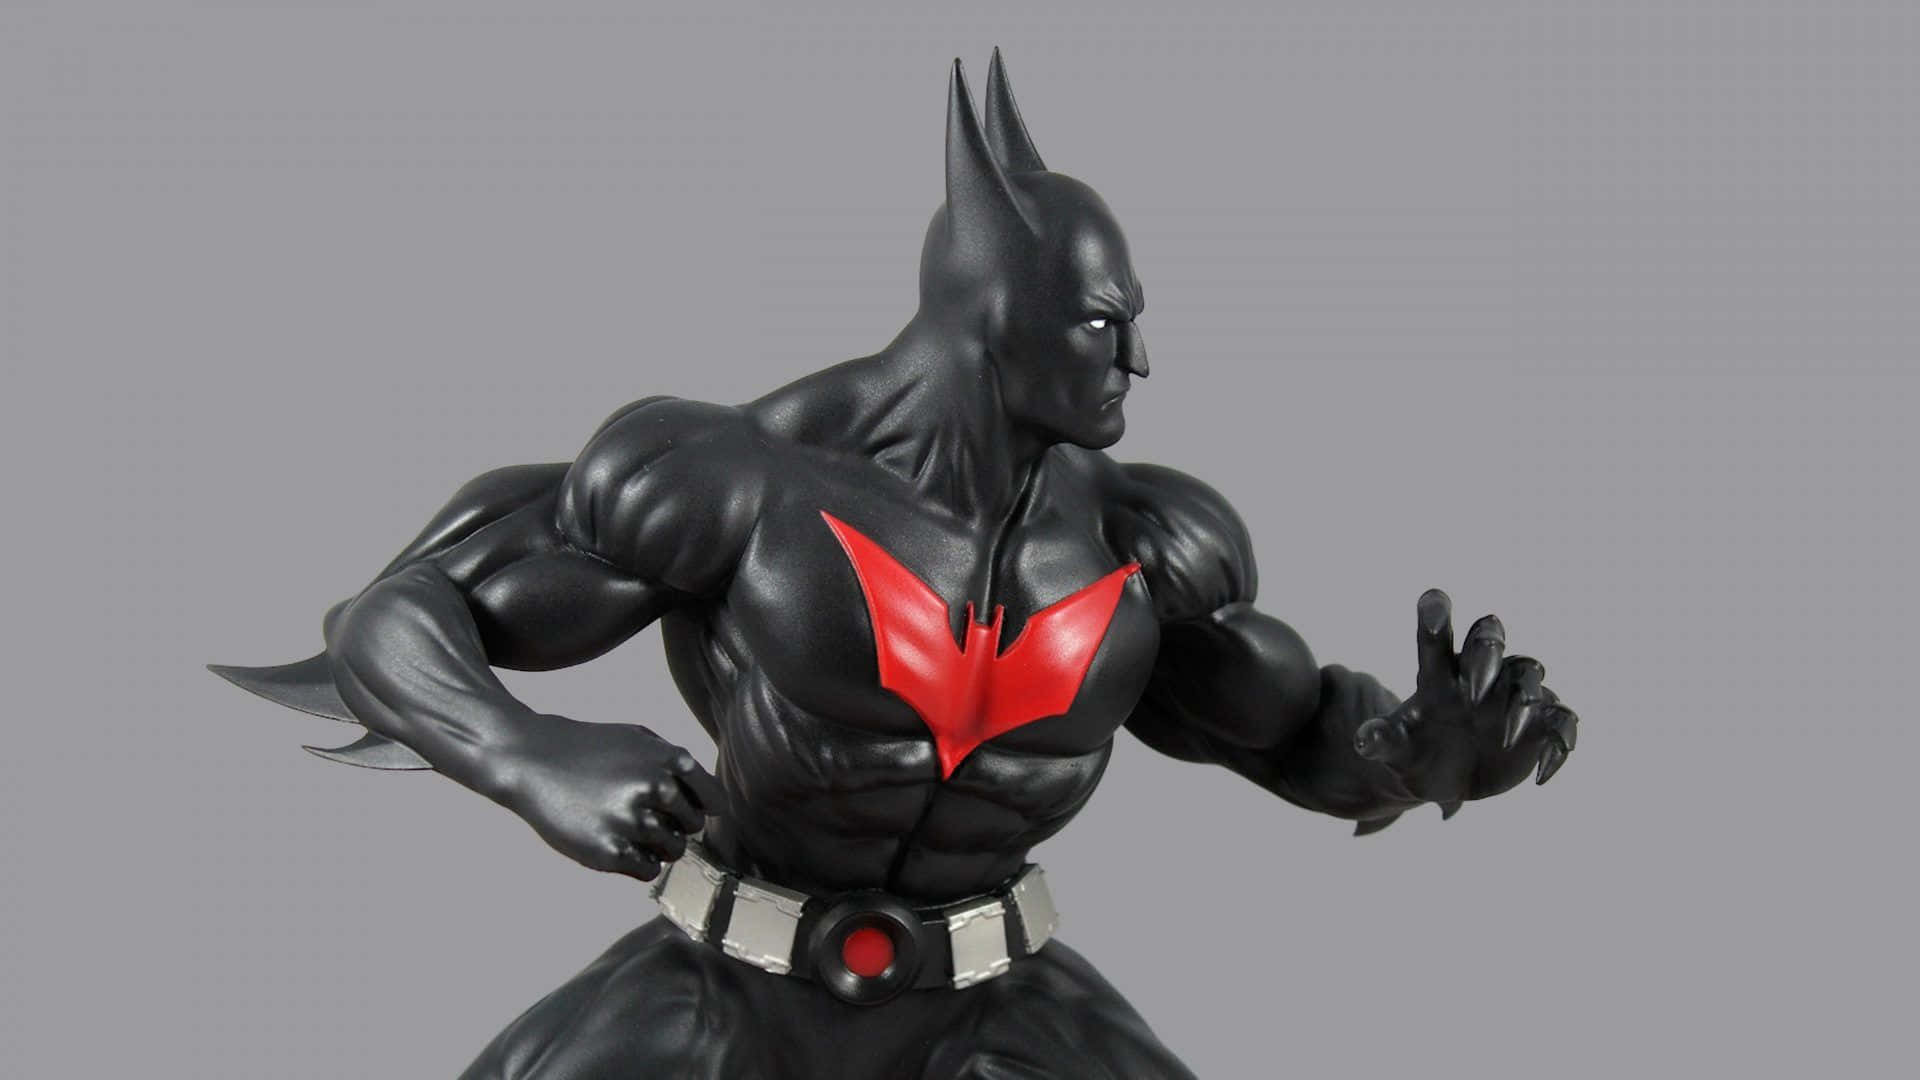 Batmanactionfigur Mit Rotem Und Schwarzem Kostüm